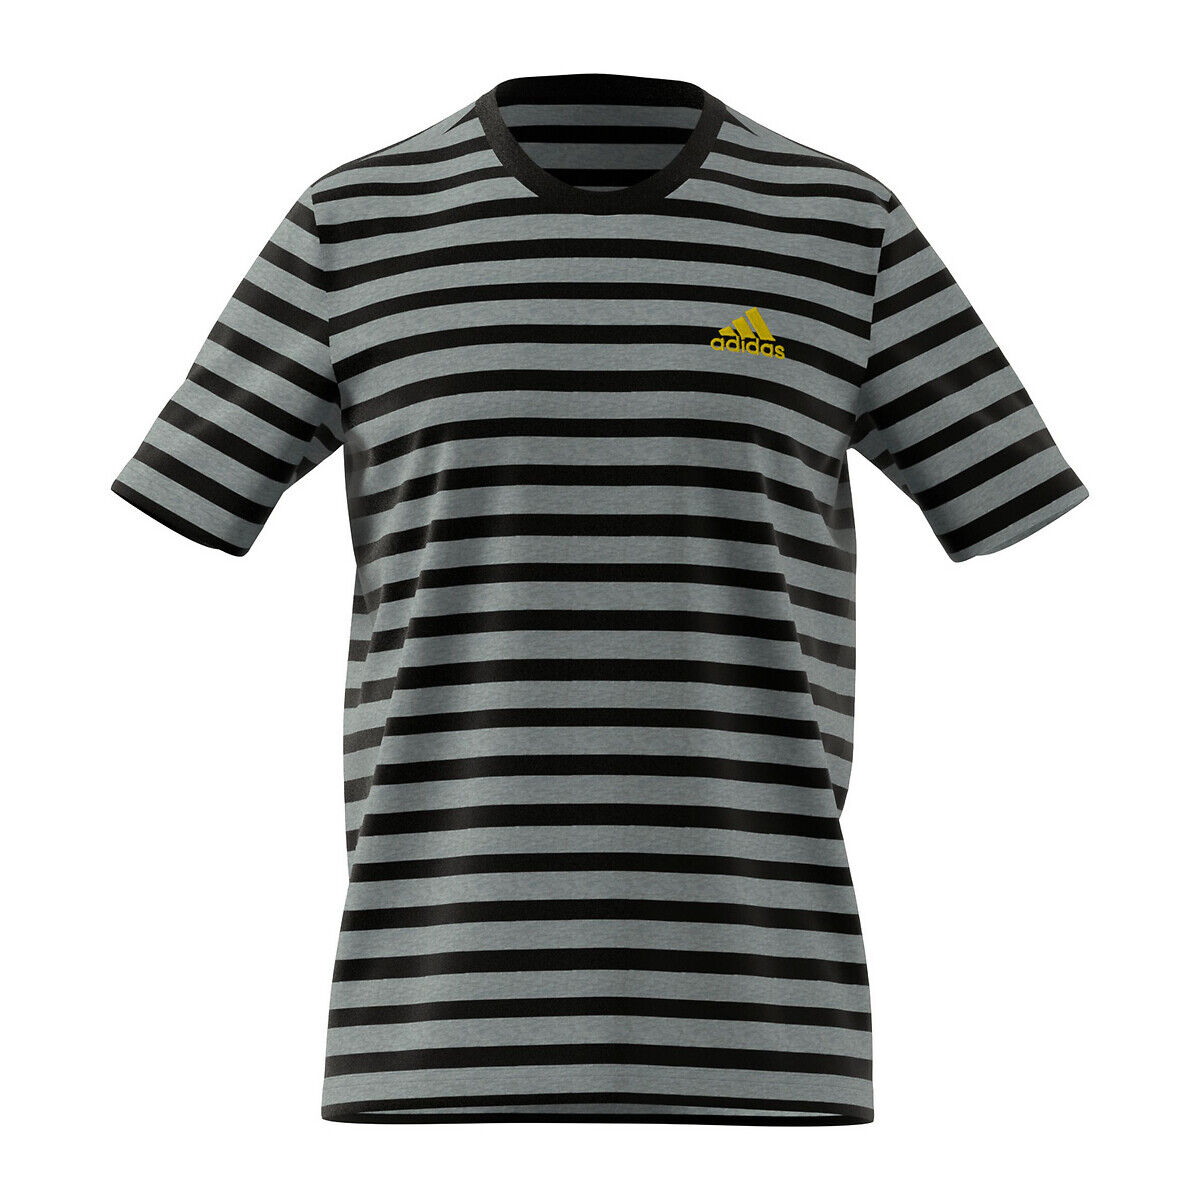 Adidas Performance T-shirt de mangas curtas estilo marinheiro   Preto